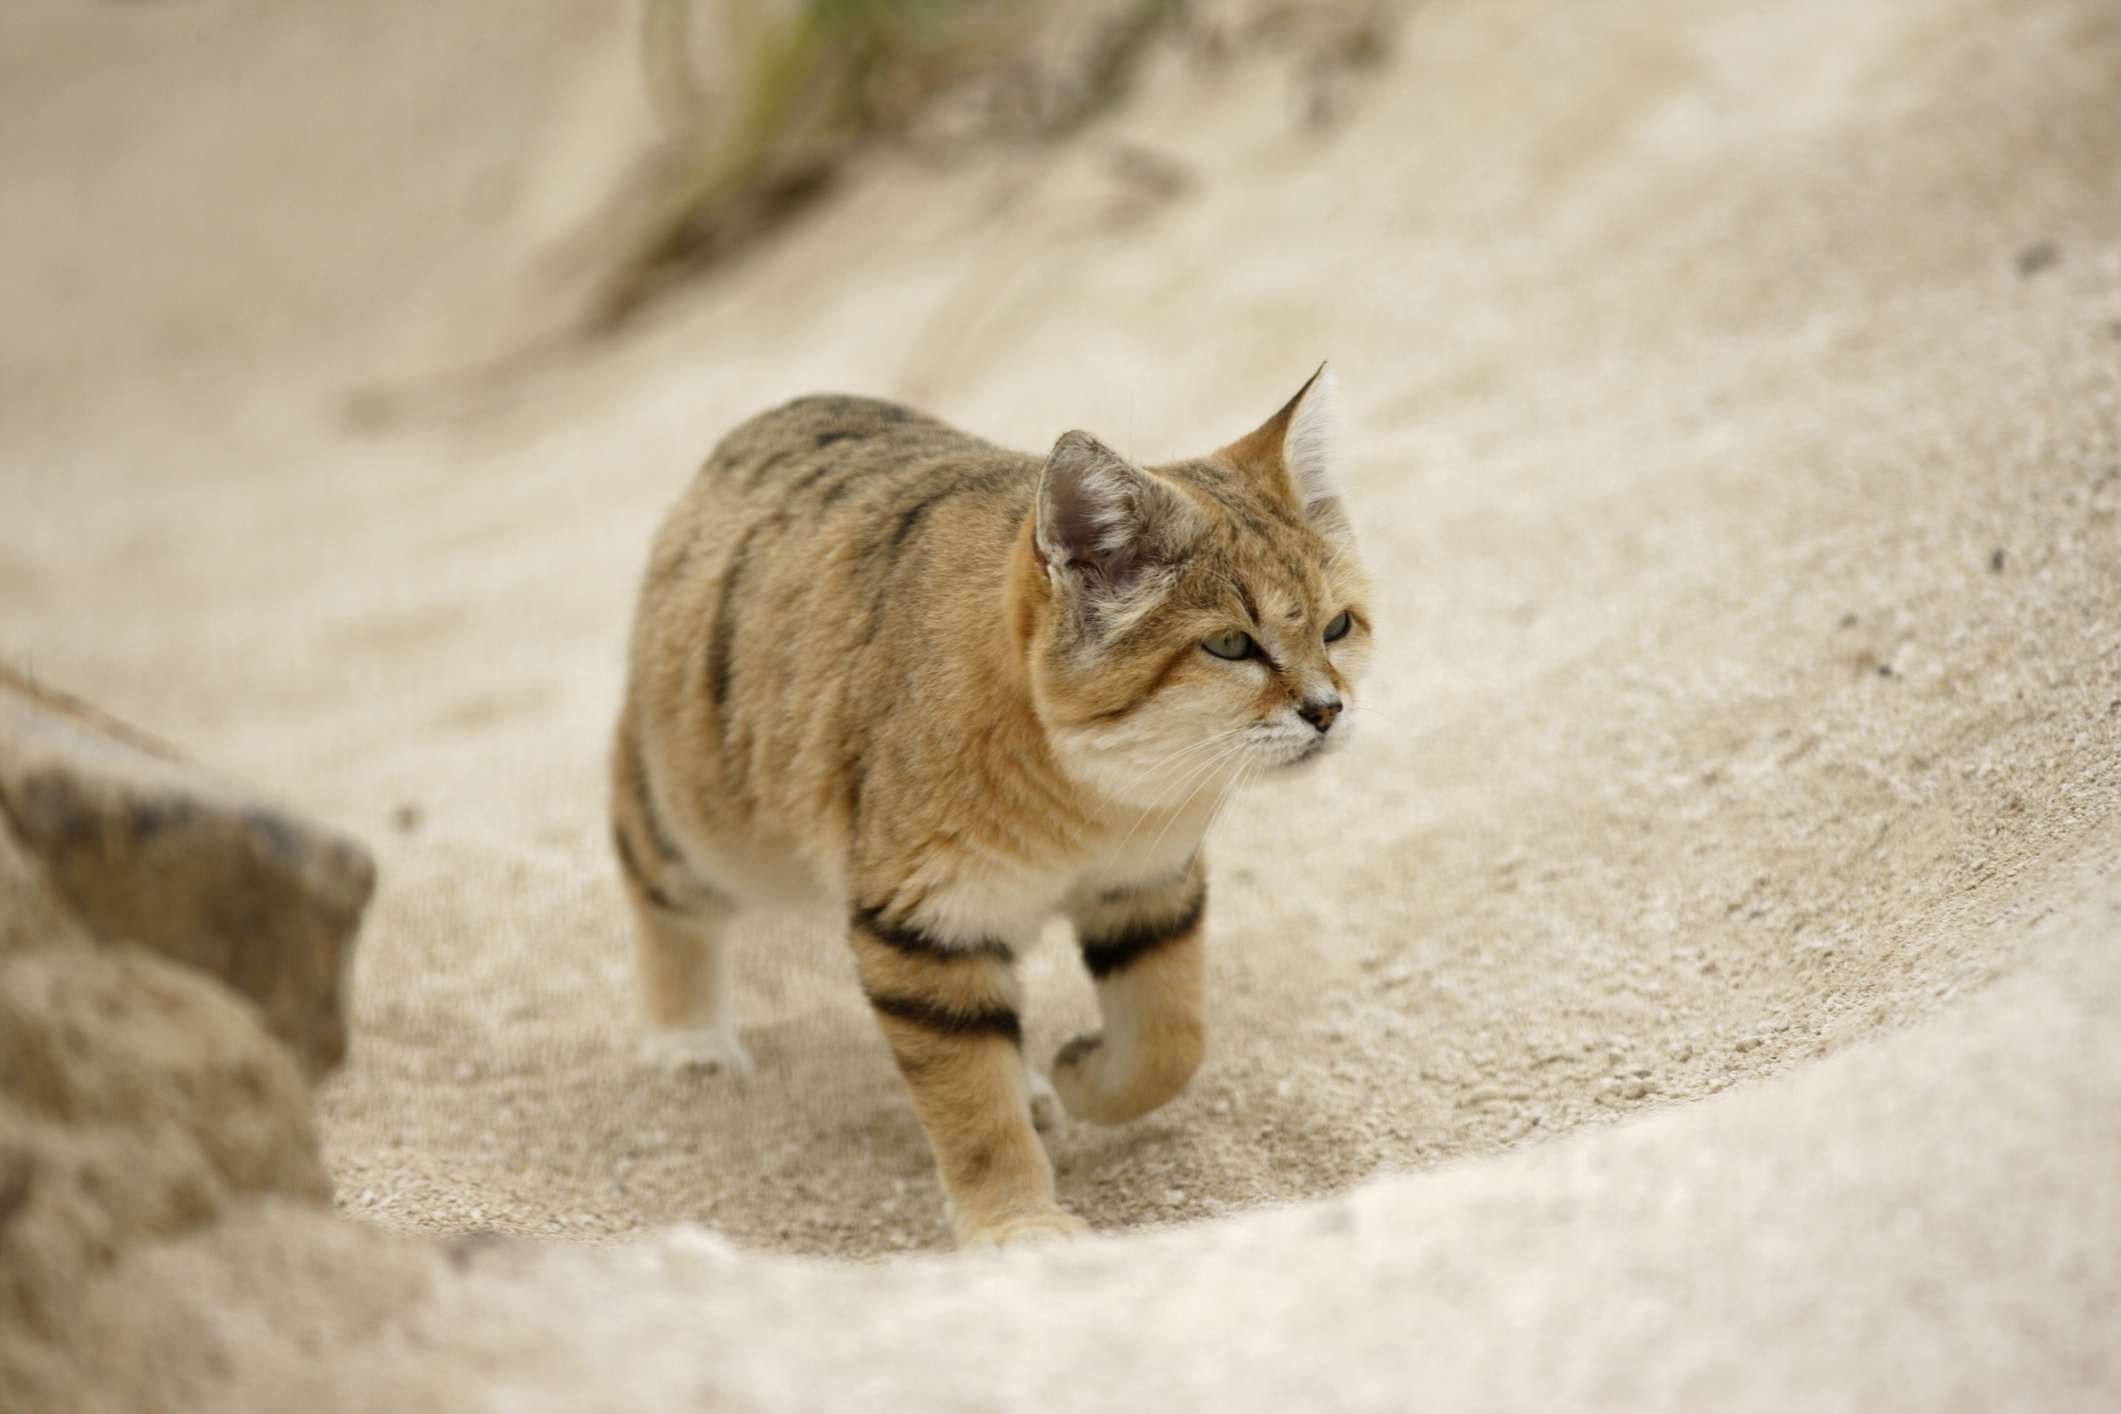 el gato de arena camina cuesta arriba por la arena suelta sin dejar huellas